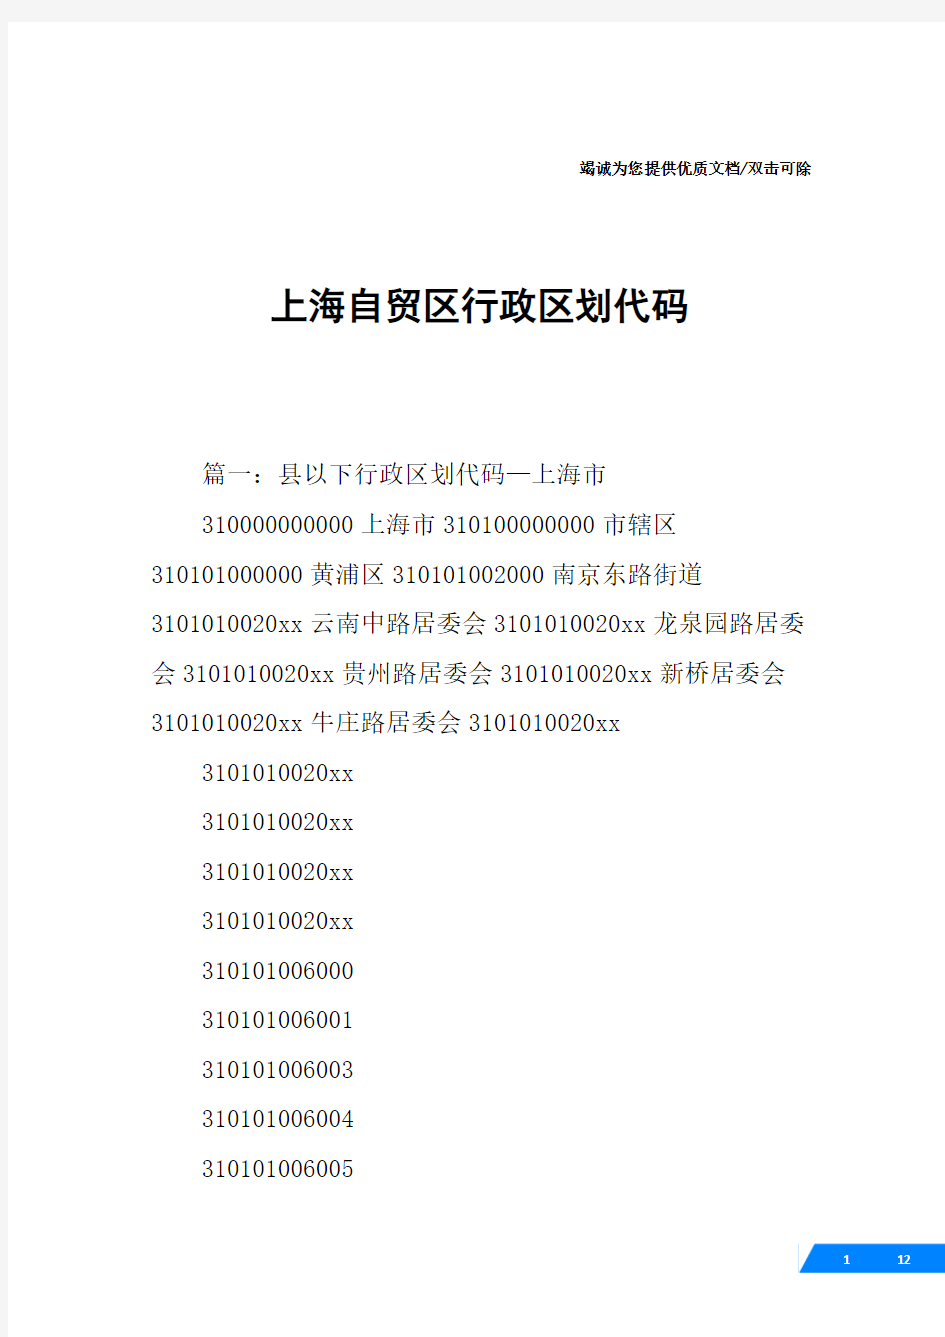 上海自贸区行政区划代码